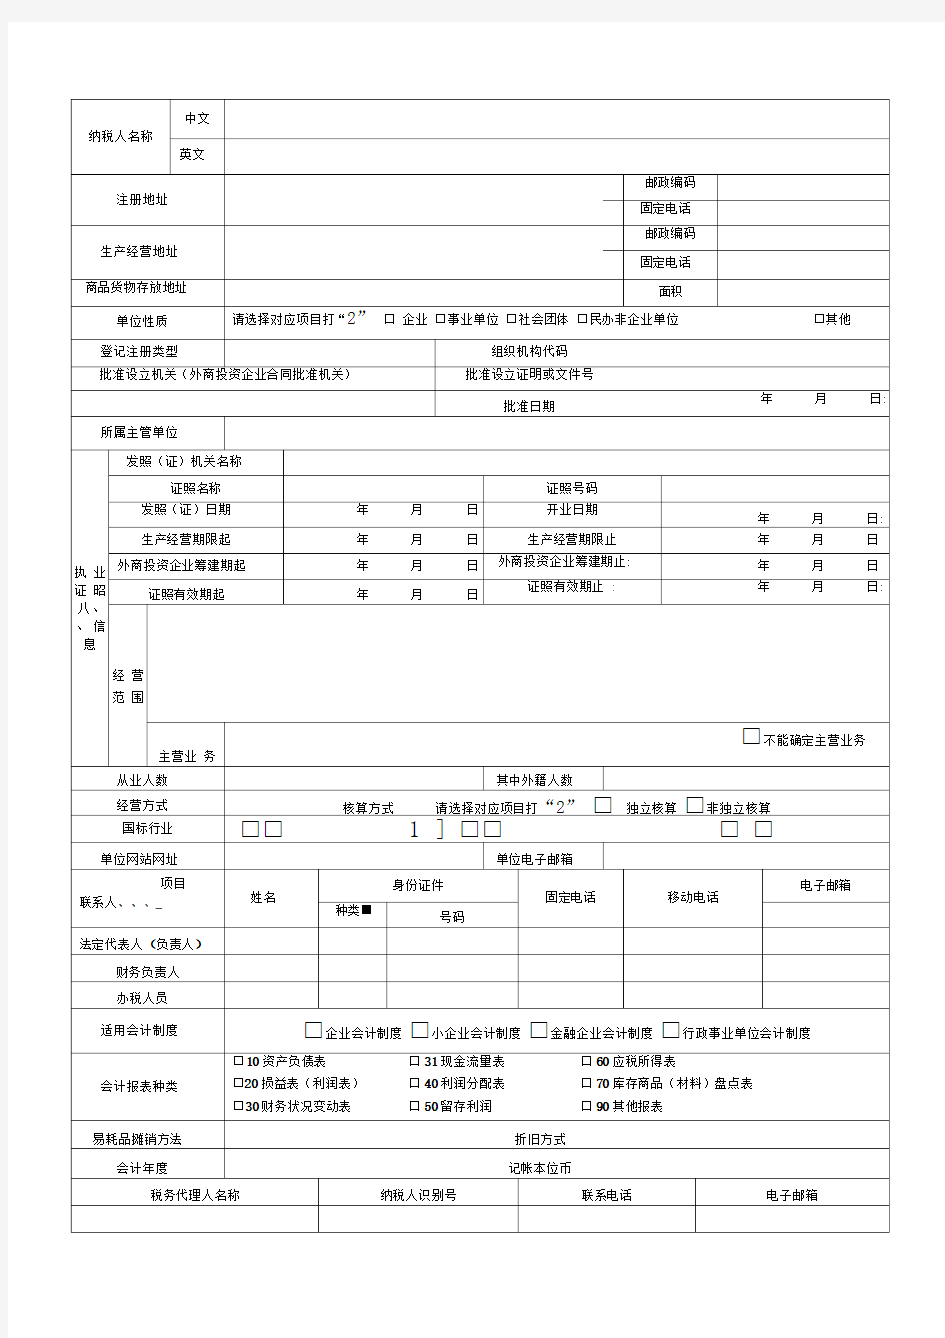 福州市国地税税务登记表(登记正表,打印3份填写)